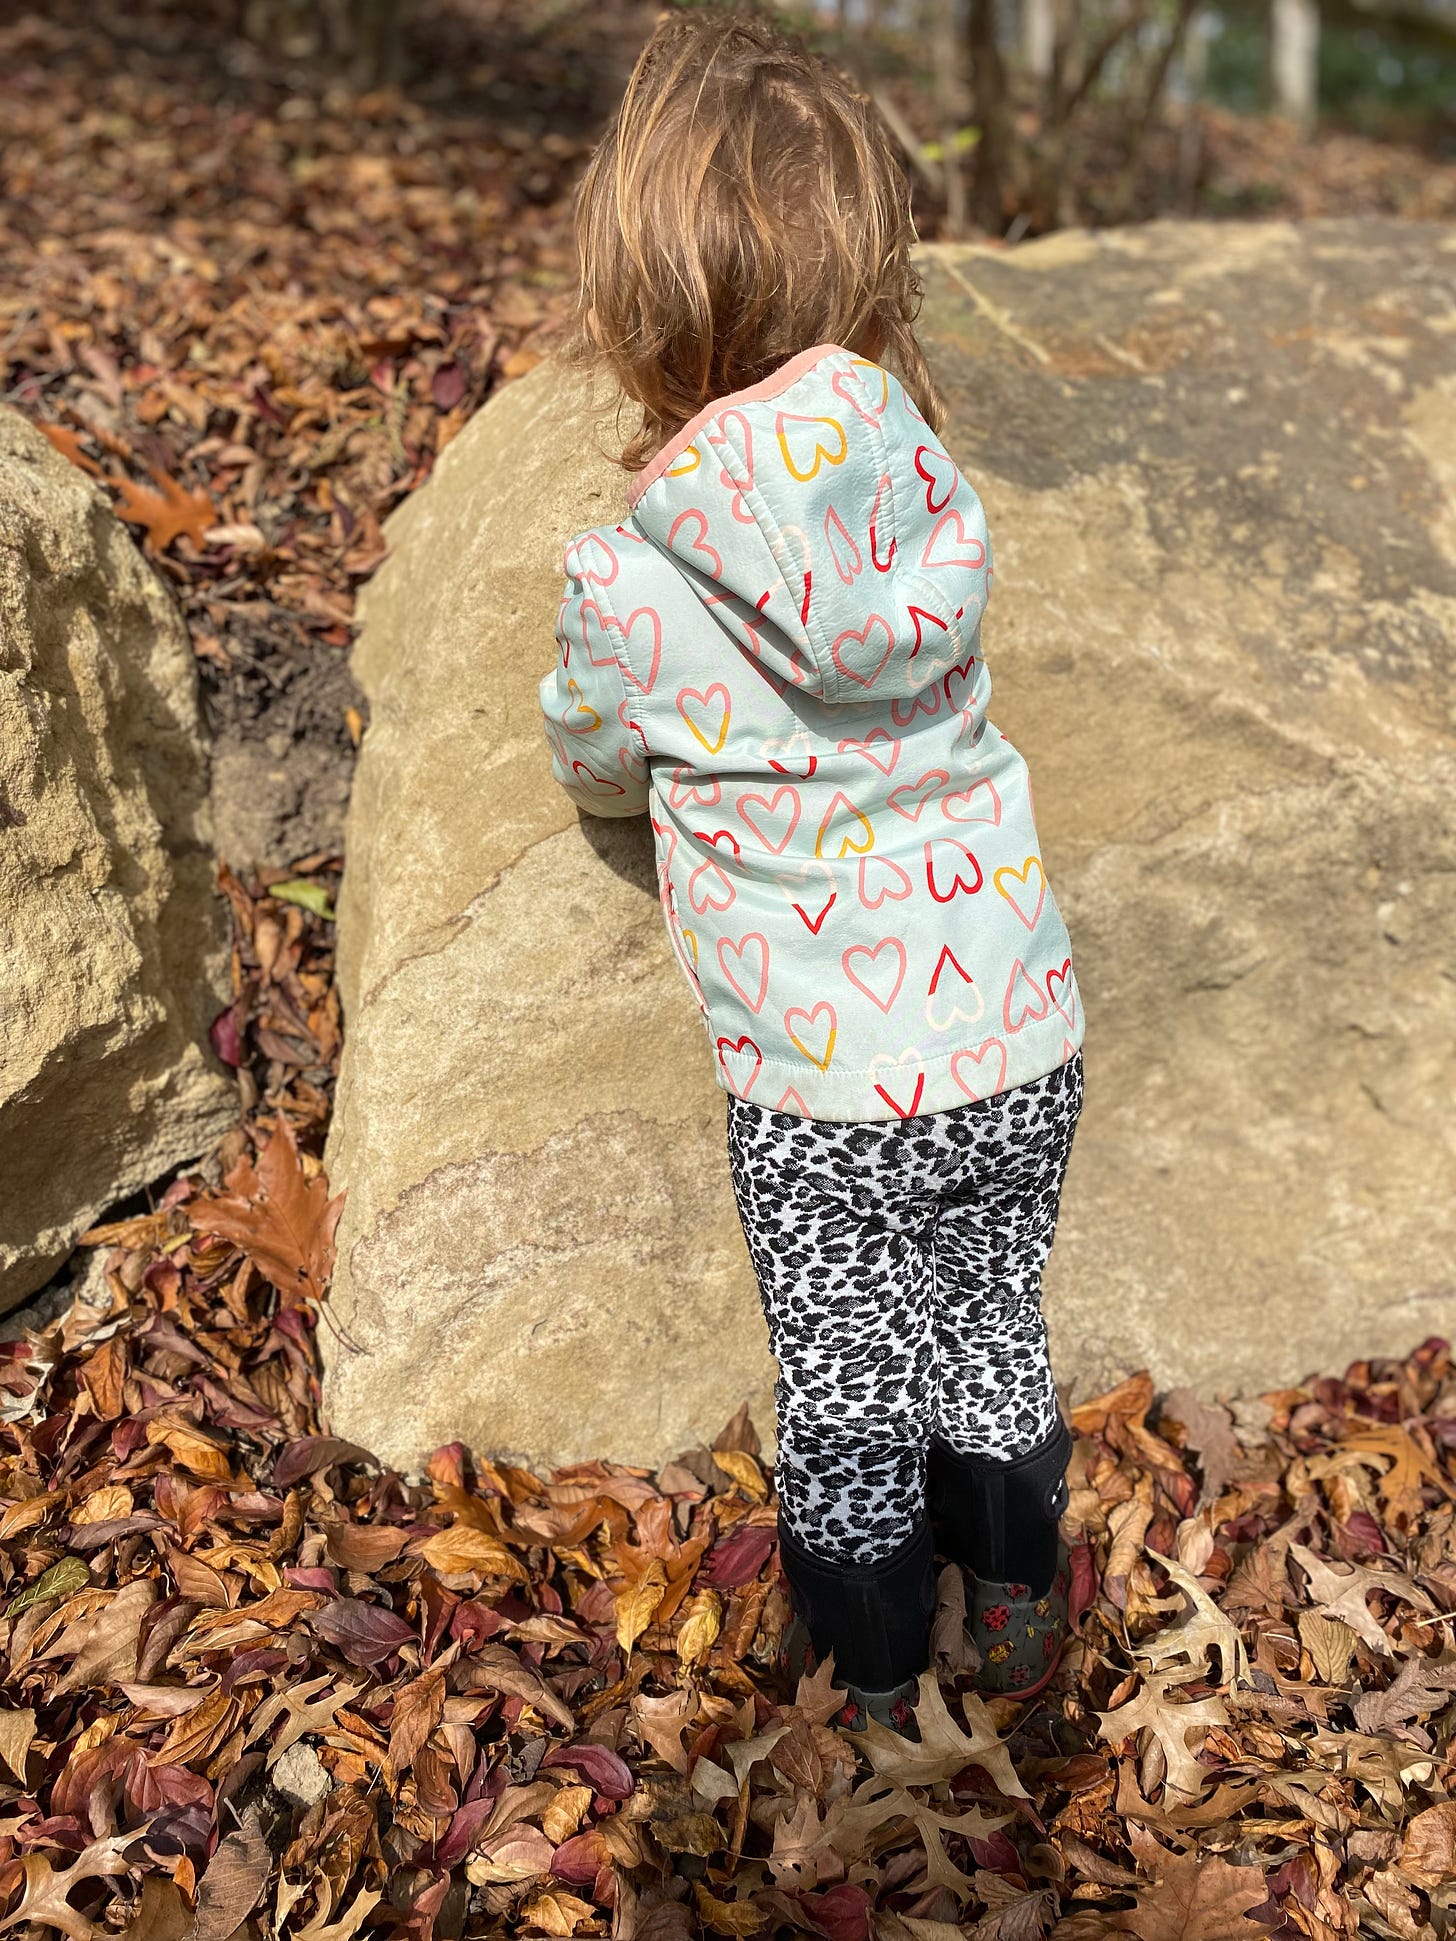 Toddler touching boulder